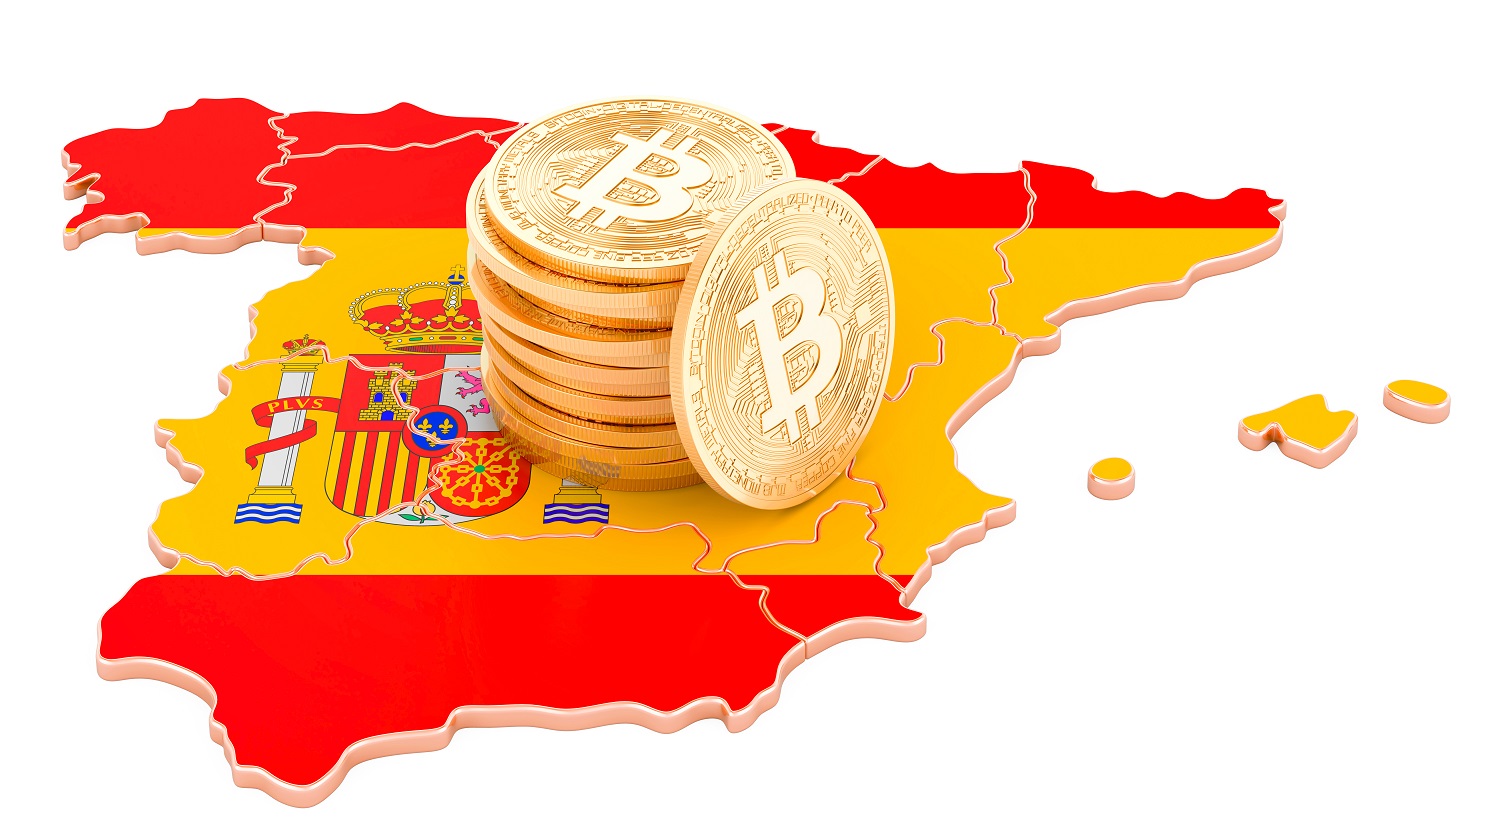 Một bản đồ 3D của Tây Ban Nha, được trang trí bằng màu sắc của quốc kỳ Tây Ban Nha, với một đống token kim loại nhằm đại diện cho Bitcoin.